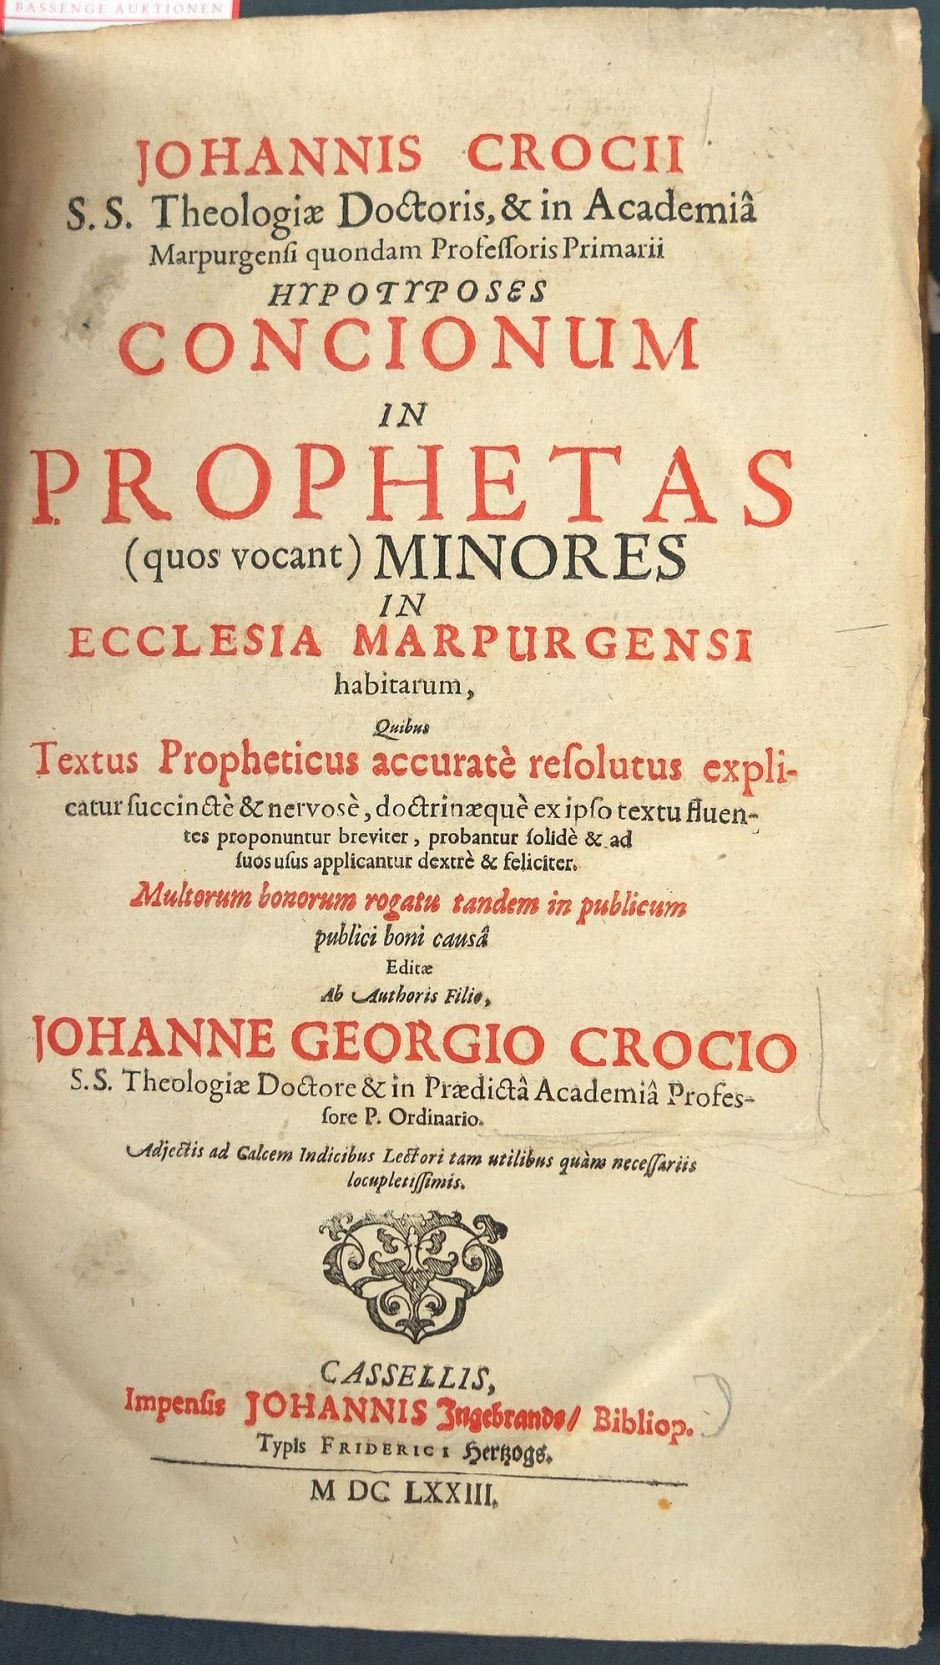 Lot 1264, Auction  115, Crocius, Johannes, Hypotyposes concionum in prophetas 